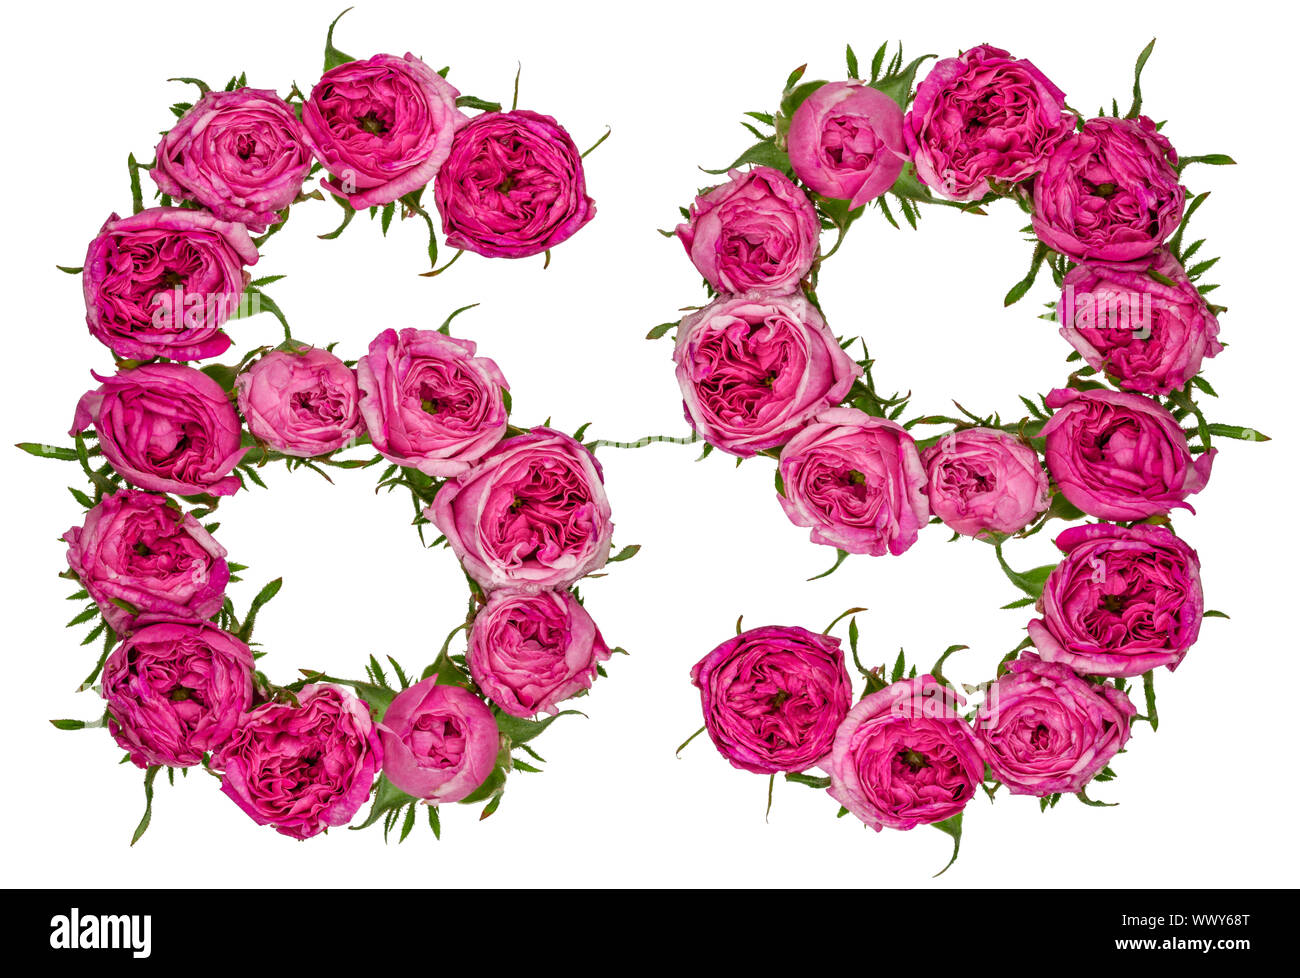 Numero arabo 69, sessanta nove, dal rosso dei fiori di rosa, isolato su sfondo bianco Foto Stock